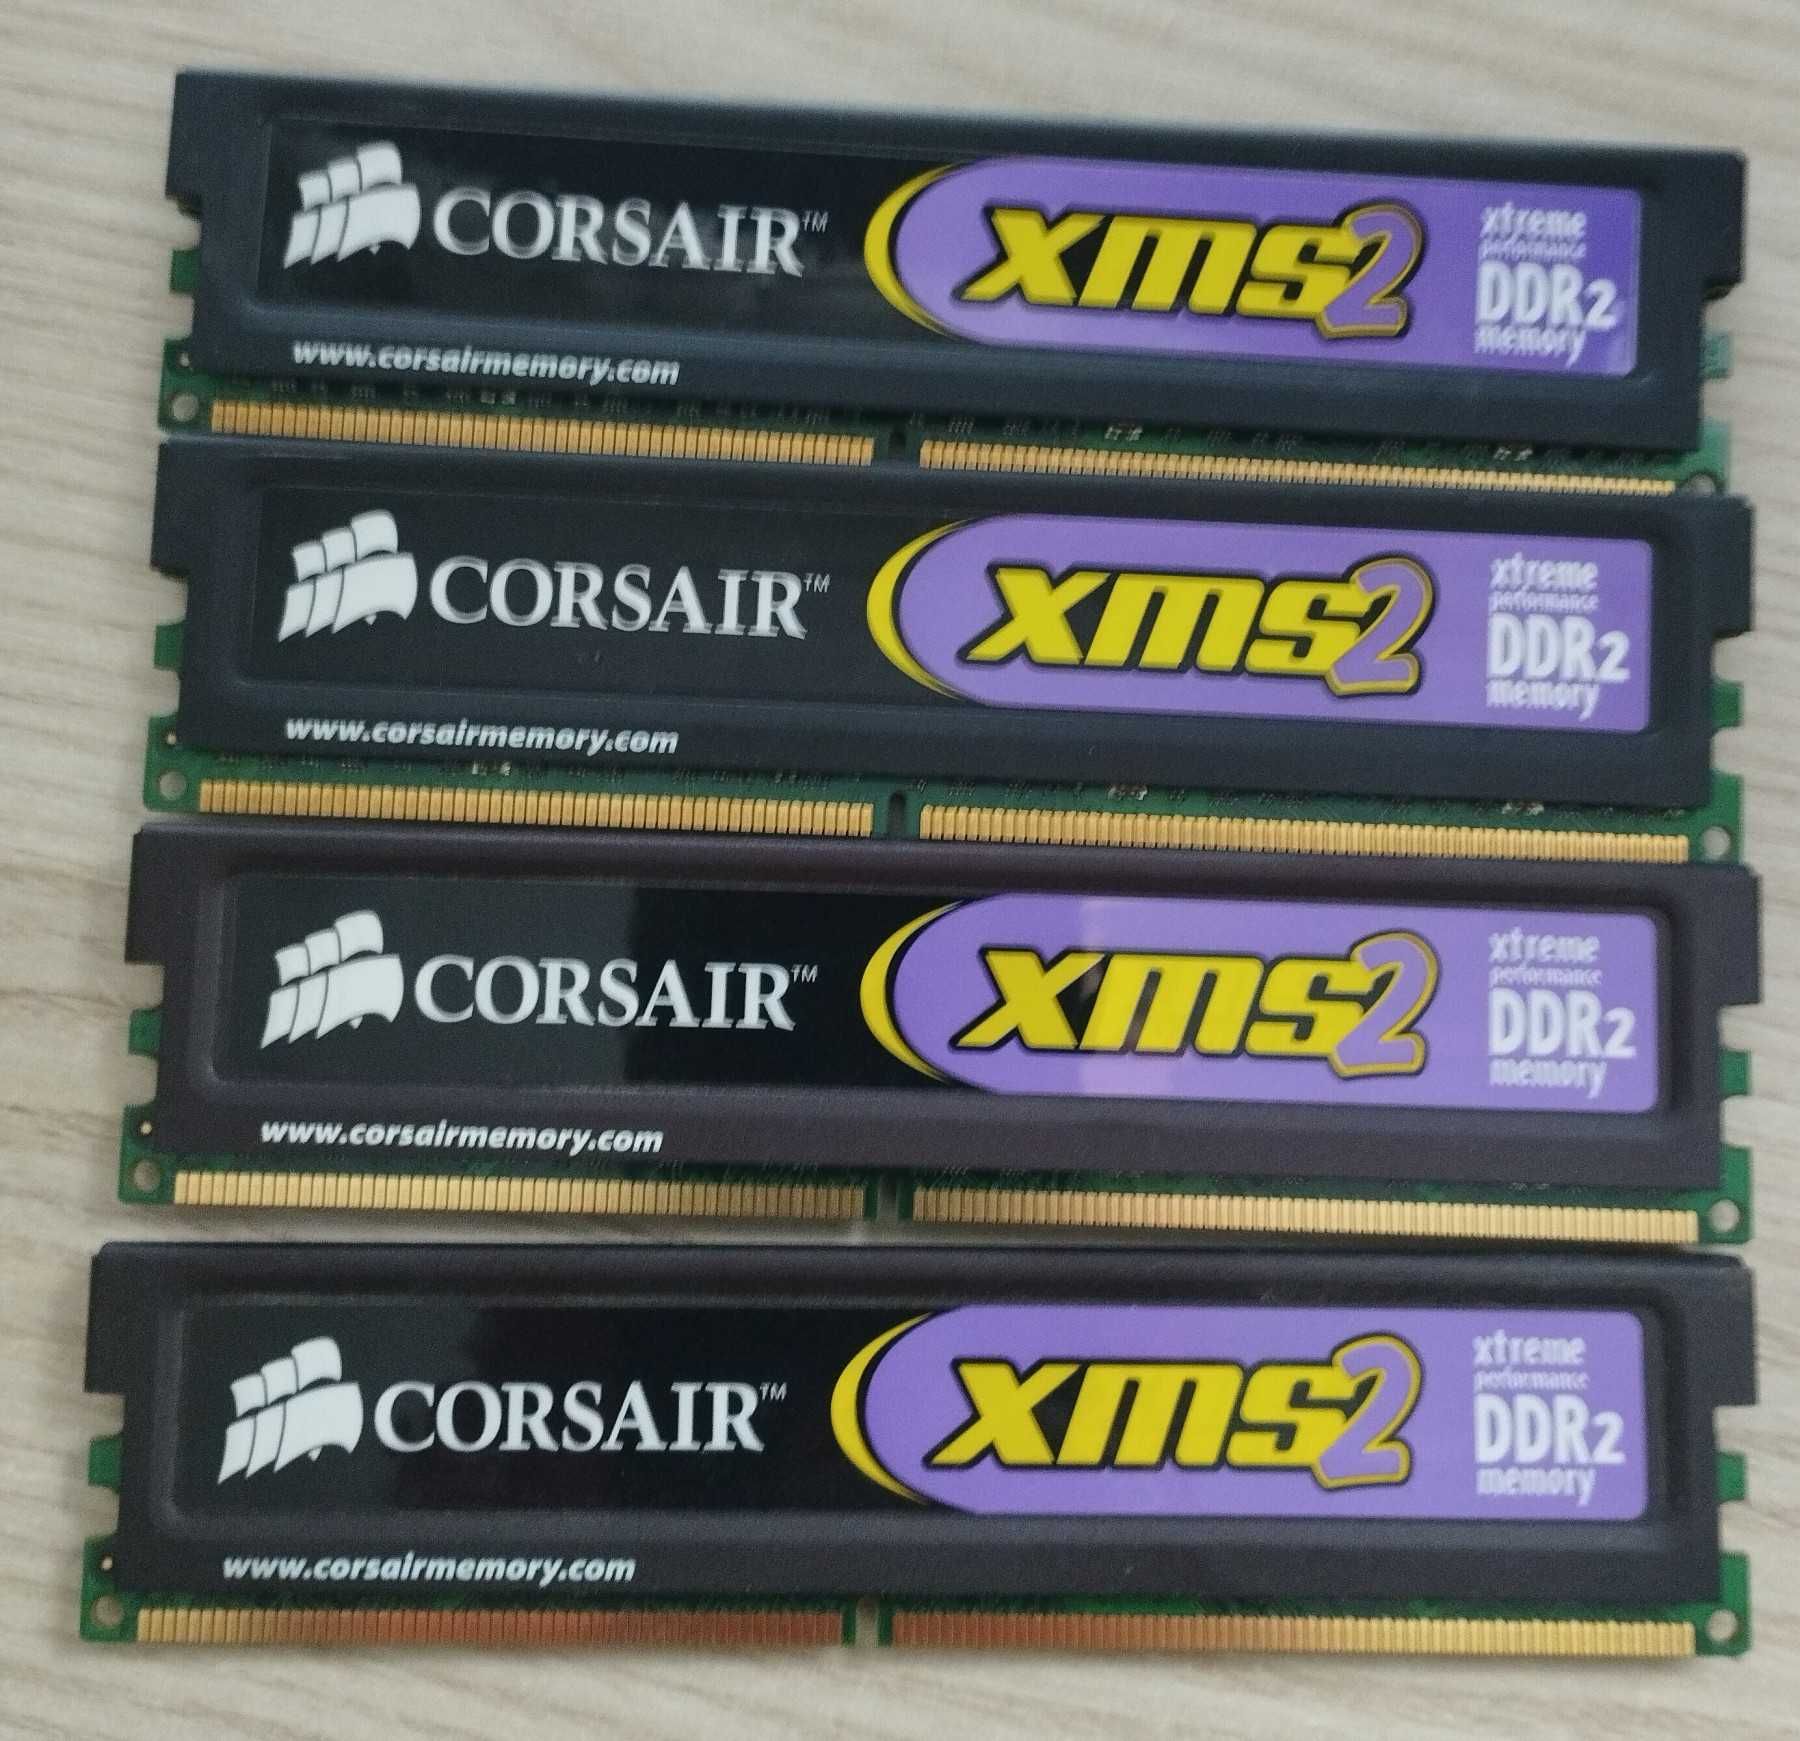 RAM DDR2 CORSAIR XMS2 6400C5 4GB 2 x 2GB 800MHz 5-5-5-18